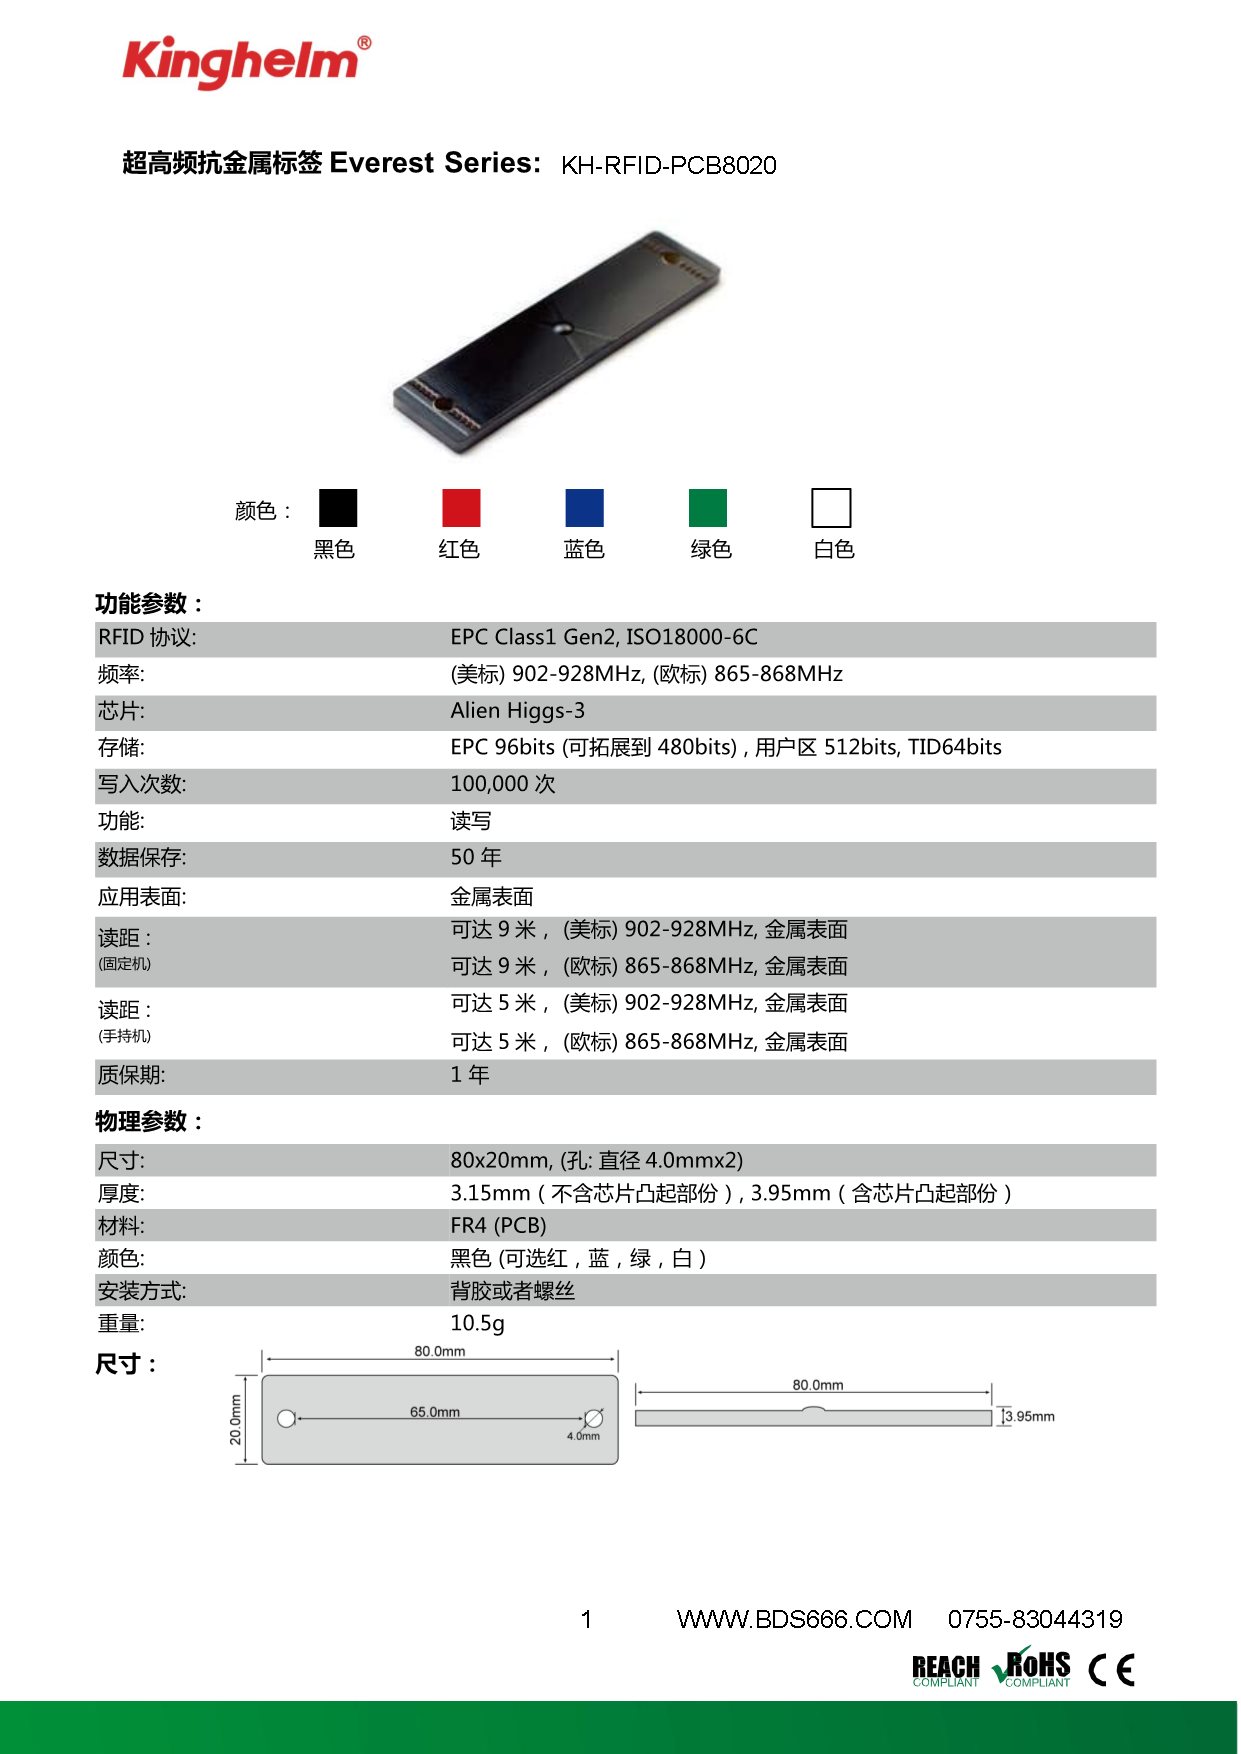 KH-RFID-PCB8020-1.jpg